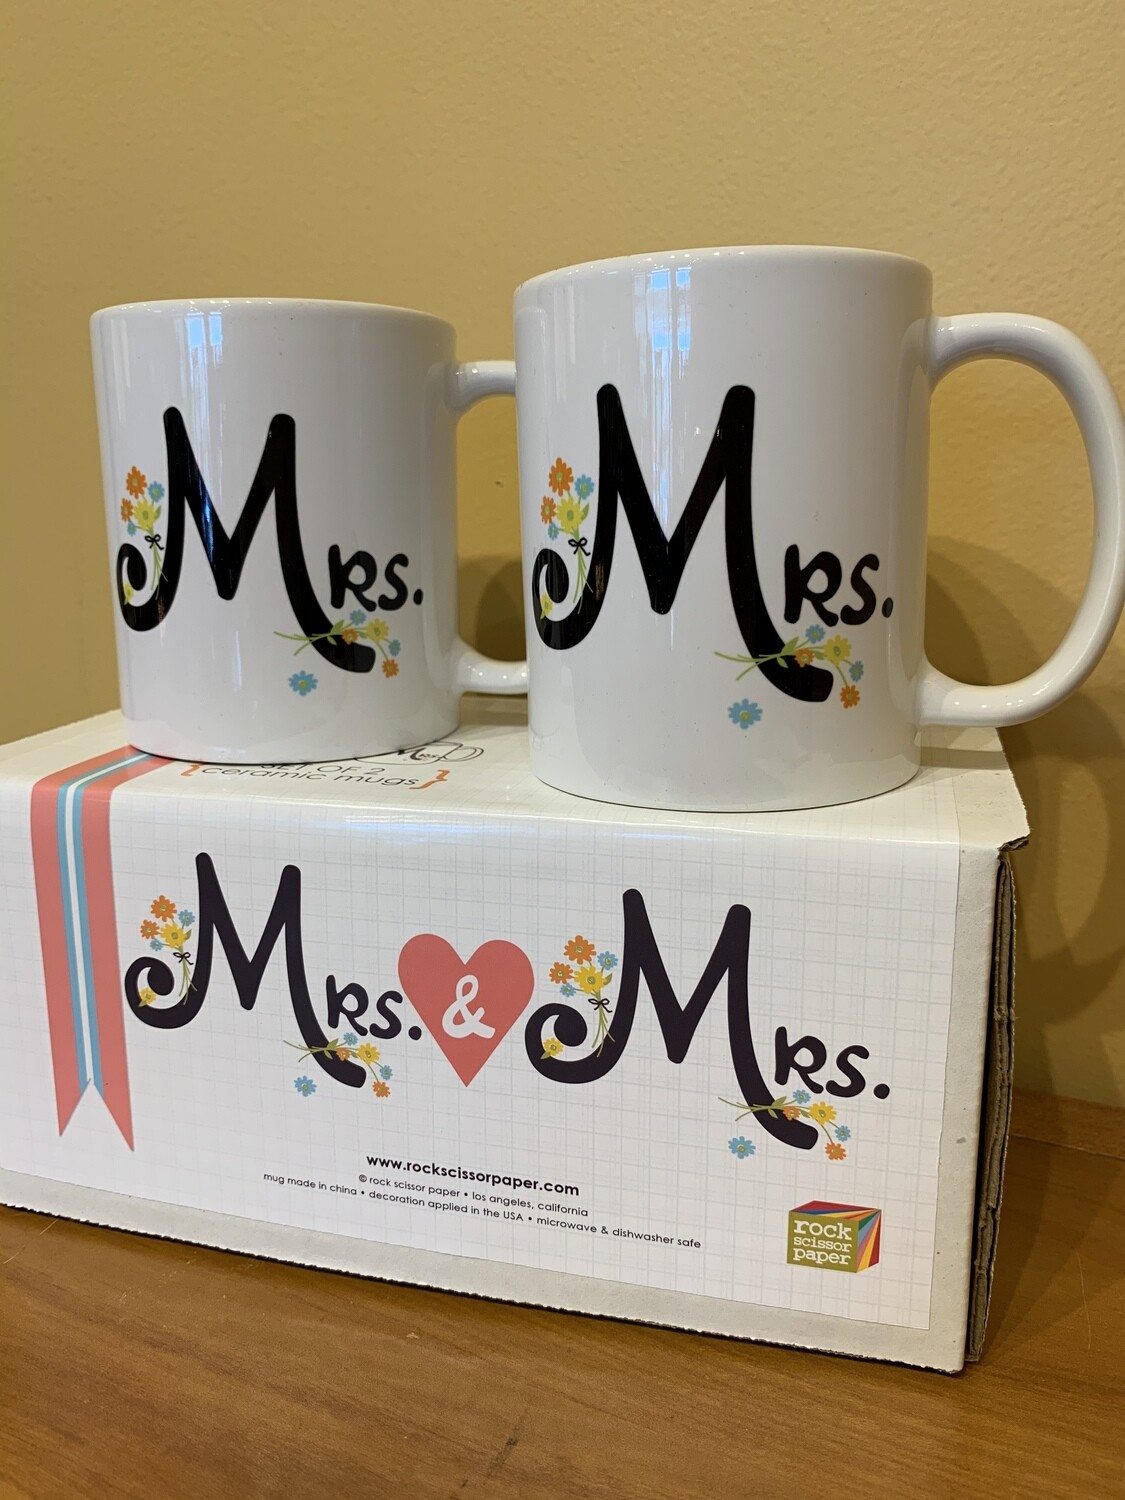 Mrs & Mrs mug set